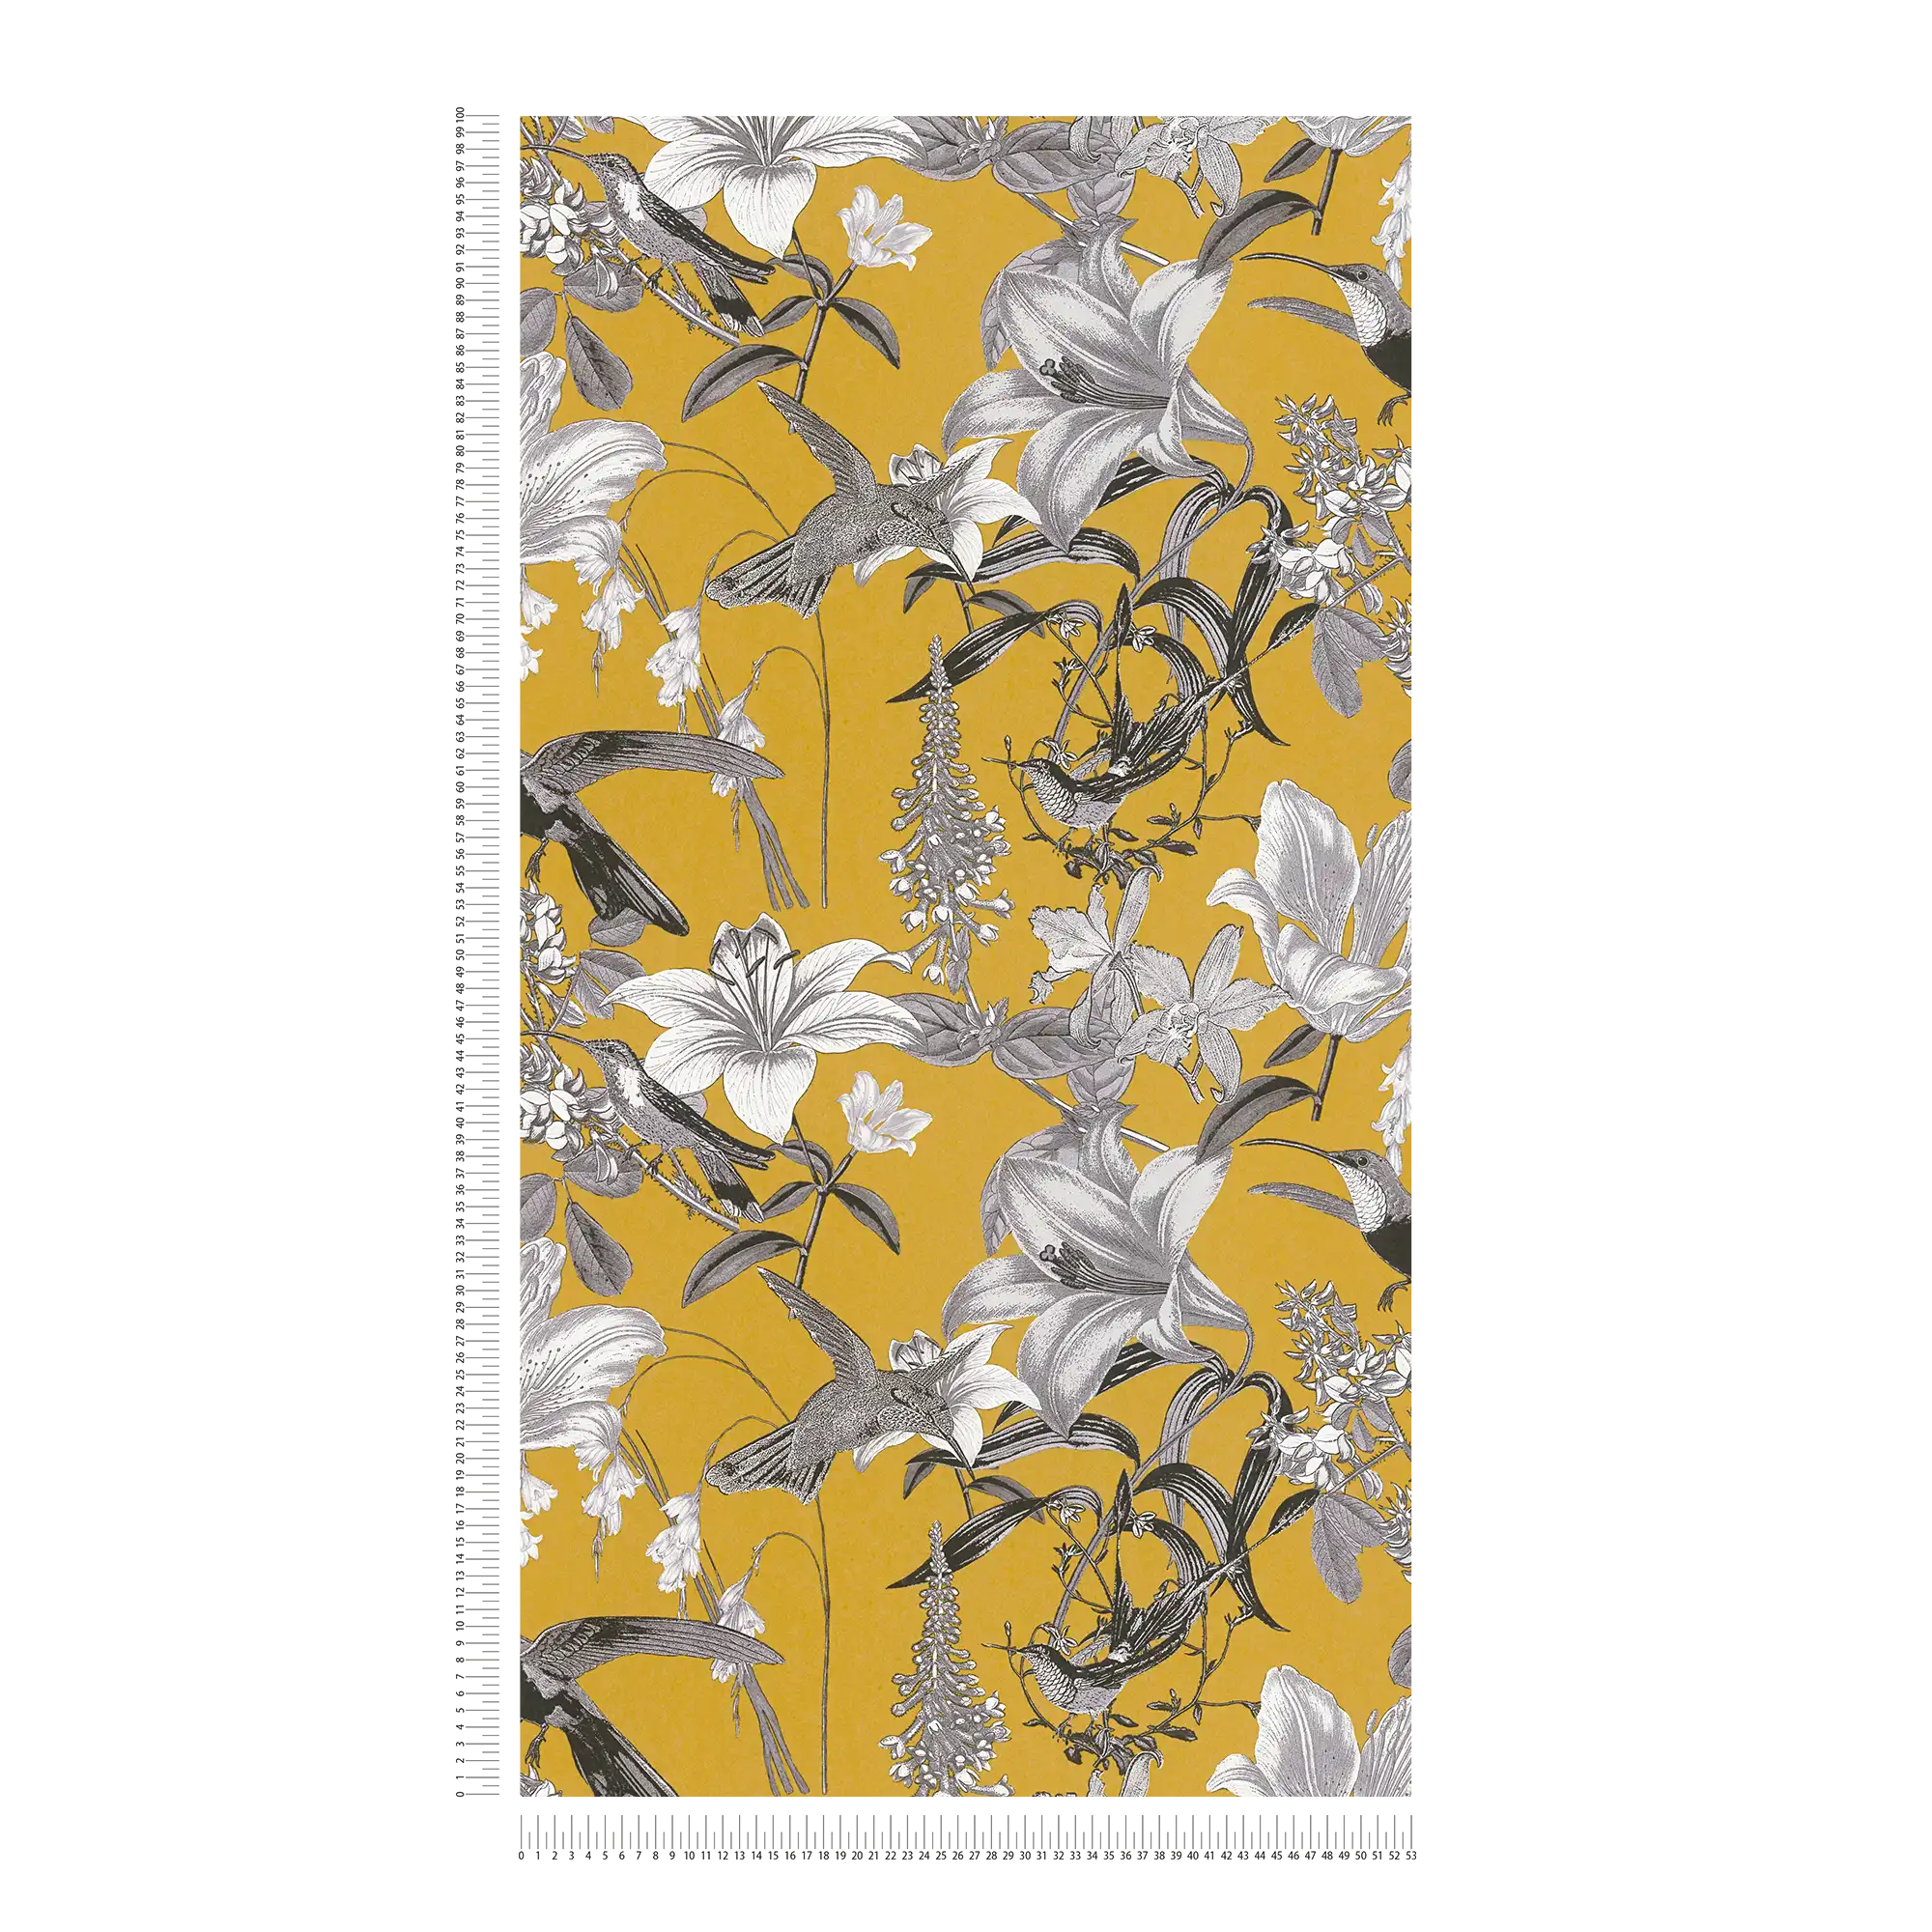             Blumen Tapete Senfgelb mit Blüten & Kolibri Muster – Gelb, Grau, Schwarz
        